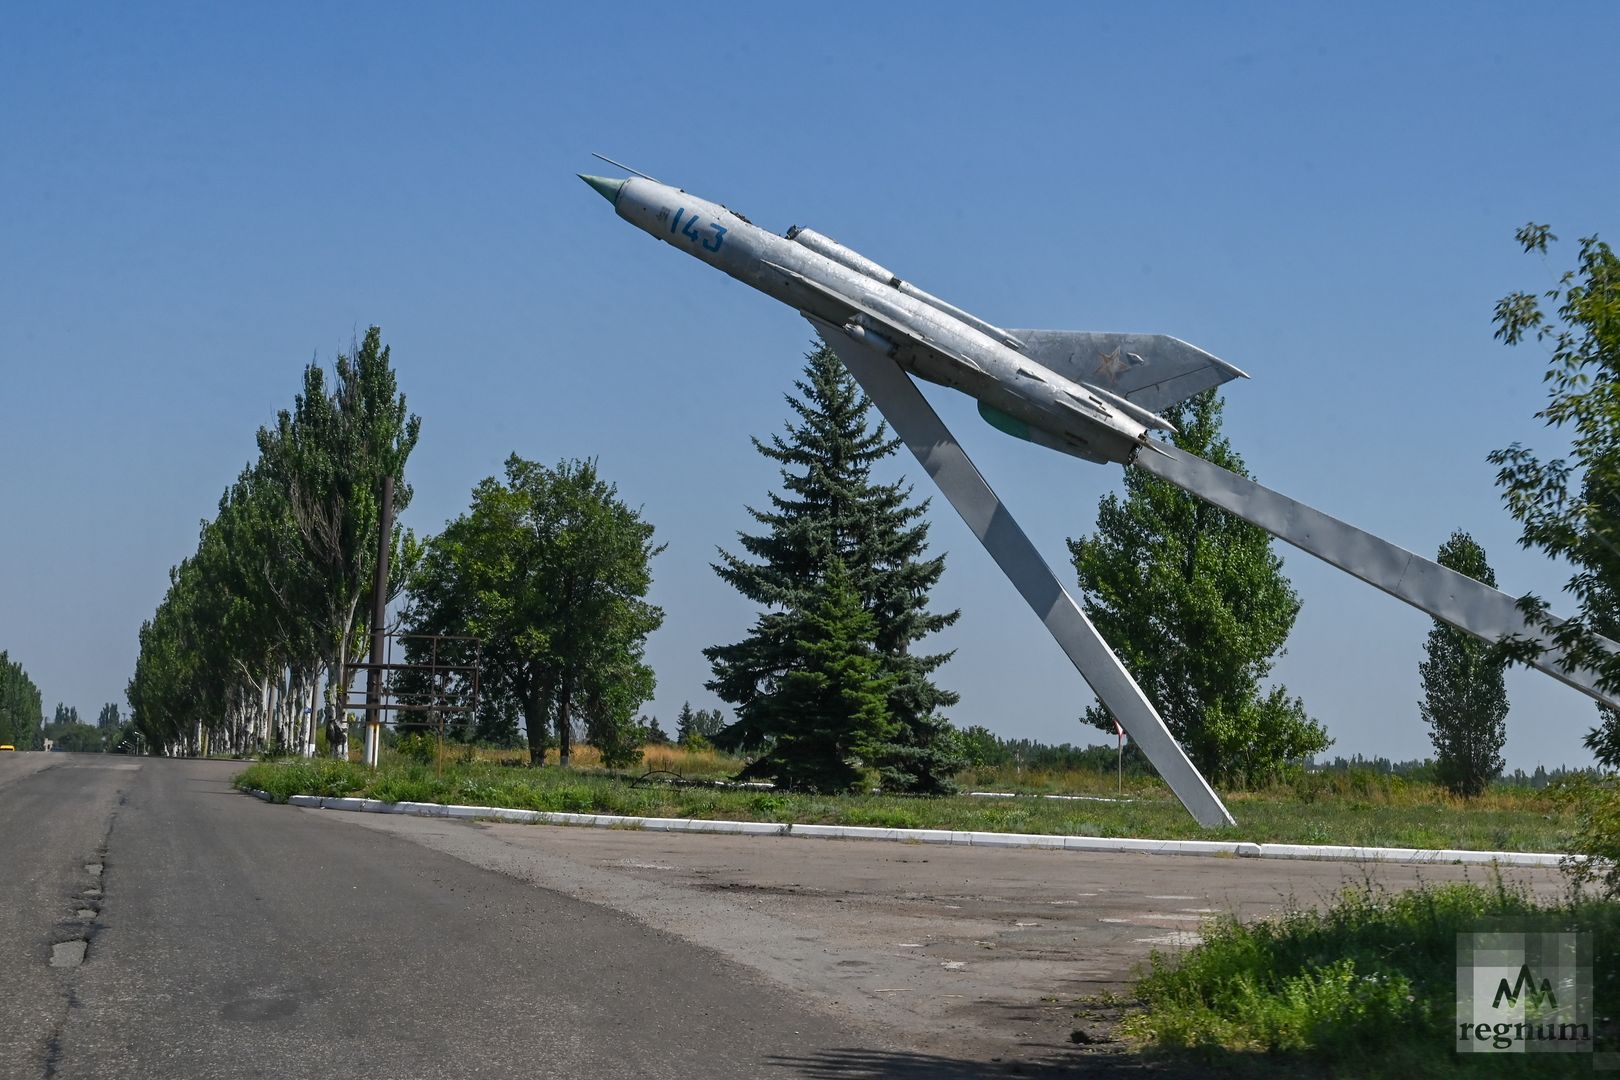 При въезде в город Углегорск установлен МИГ-21 на постаменте. На таком самолете летал Береговой Георгий Тимофеевич, дважды Герой Советского Союза